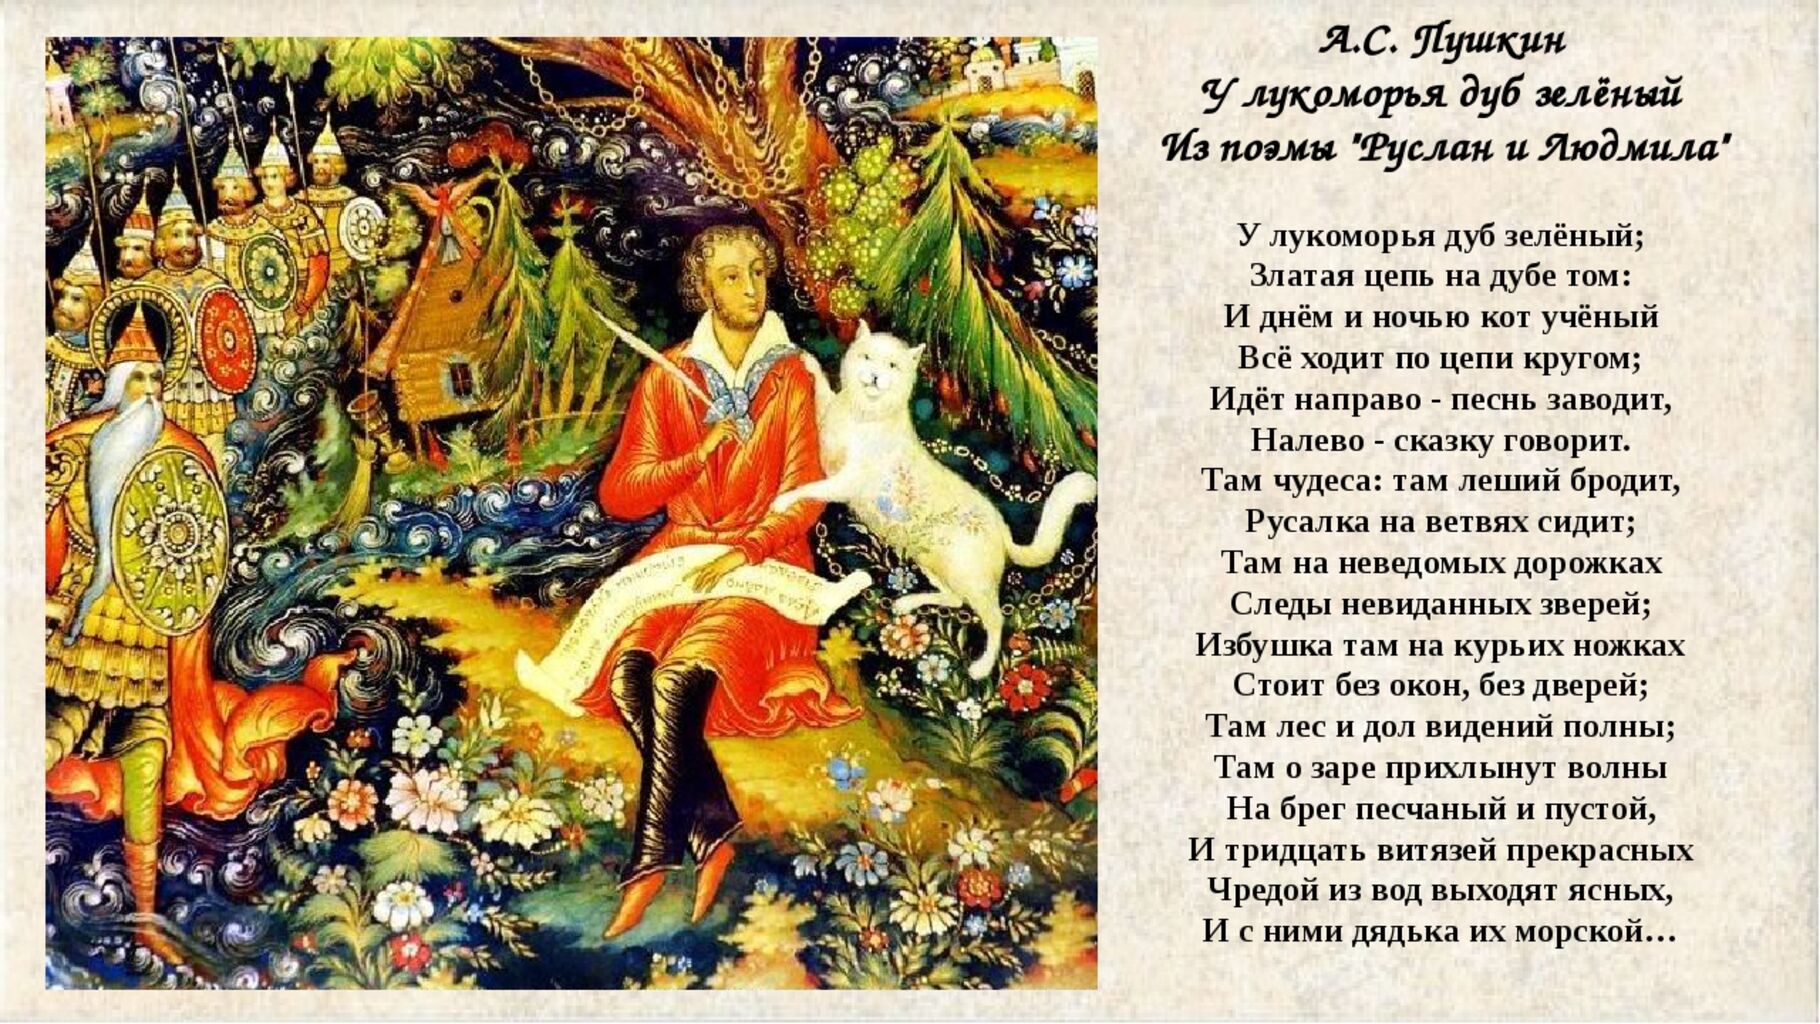 Произведение стал великим. Пушкин а.с. "у Лукоморья дуб зеленый...". Пушкин у Лукоморья дуб зеленый златая цепь на.